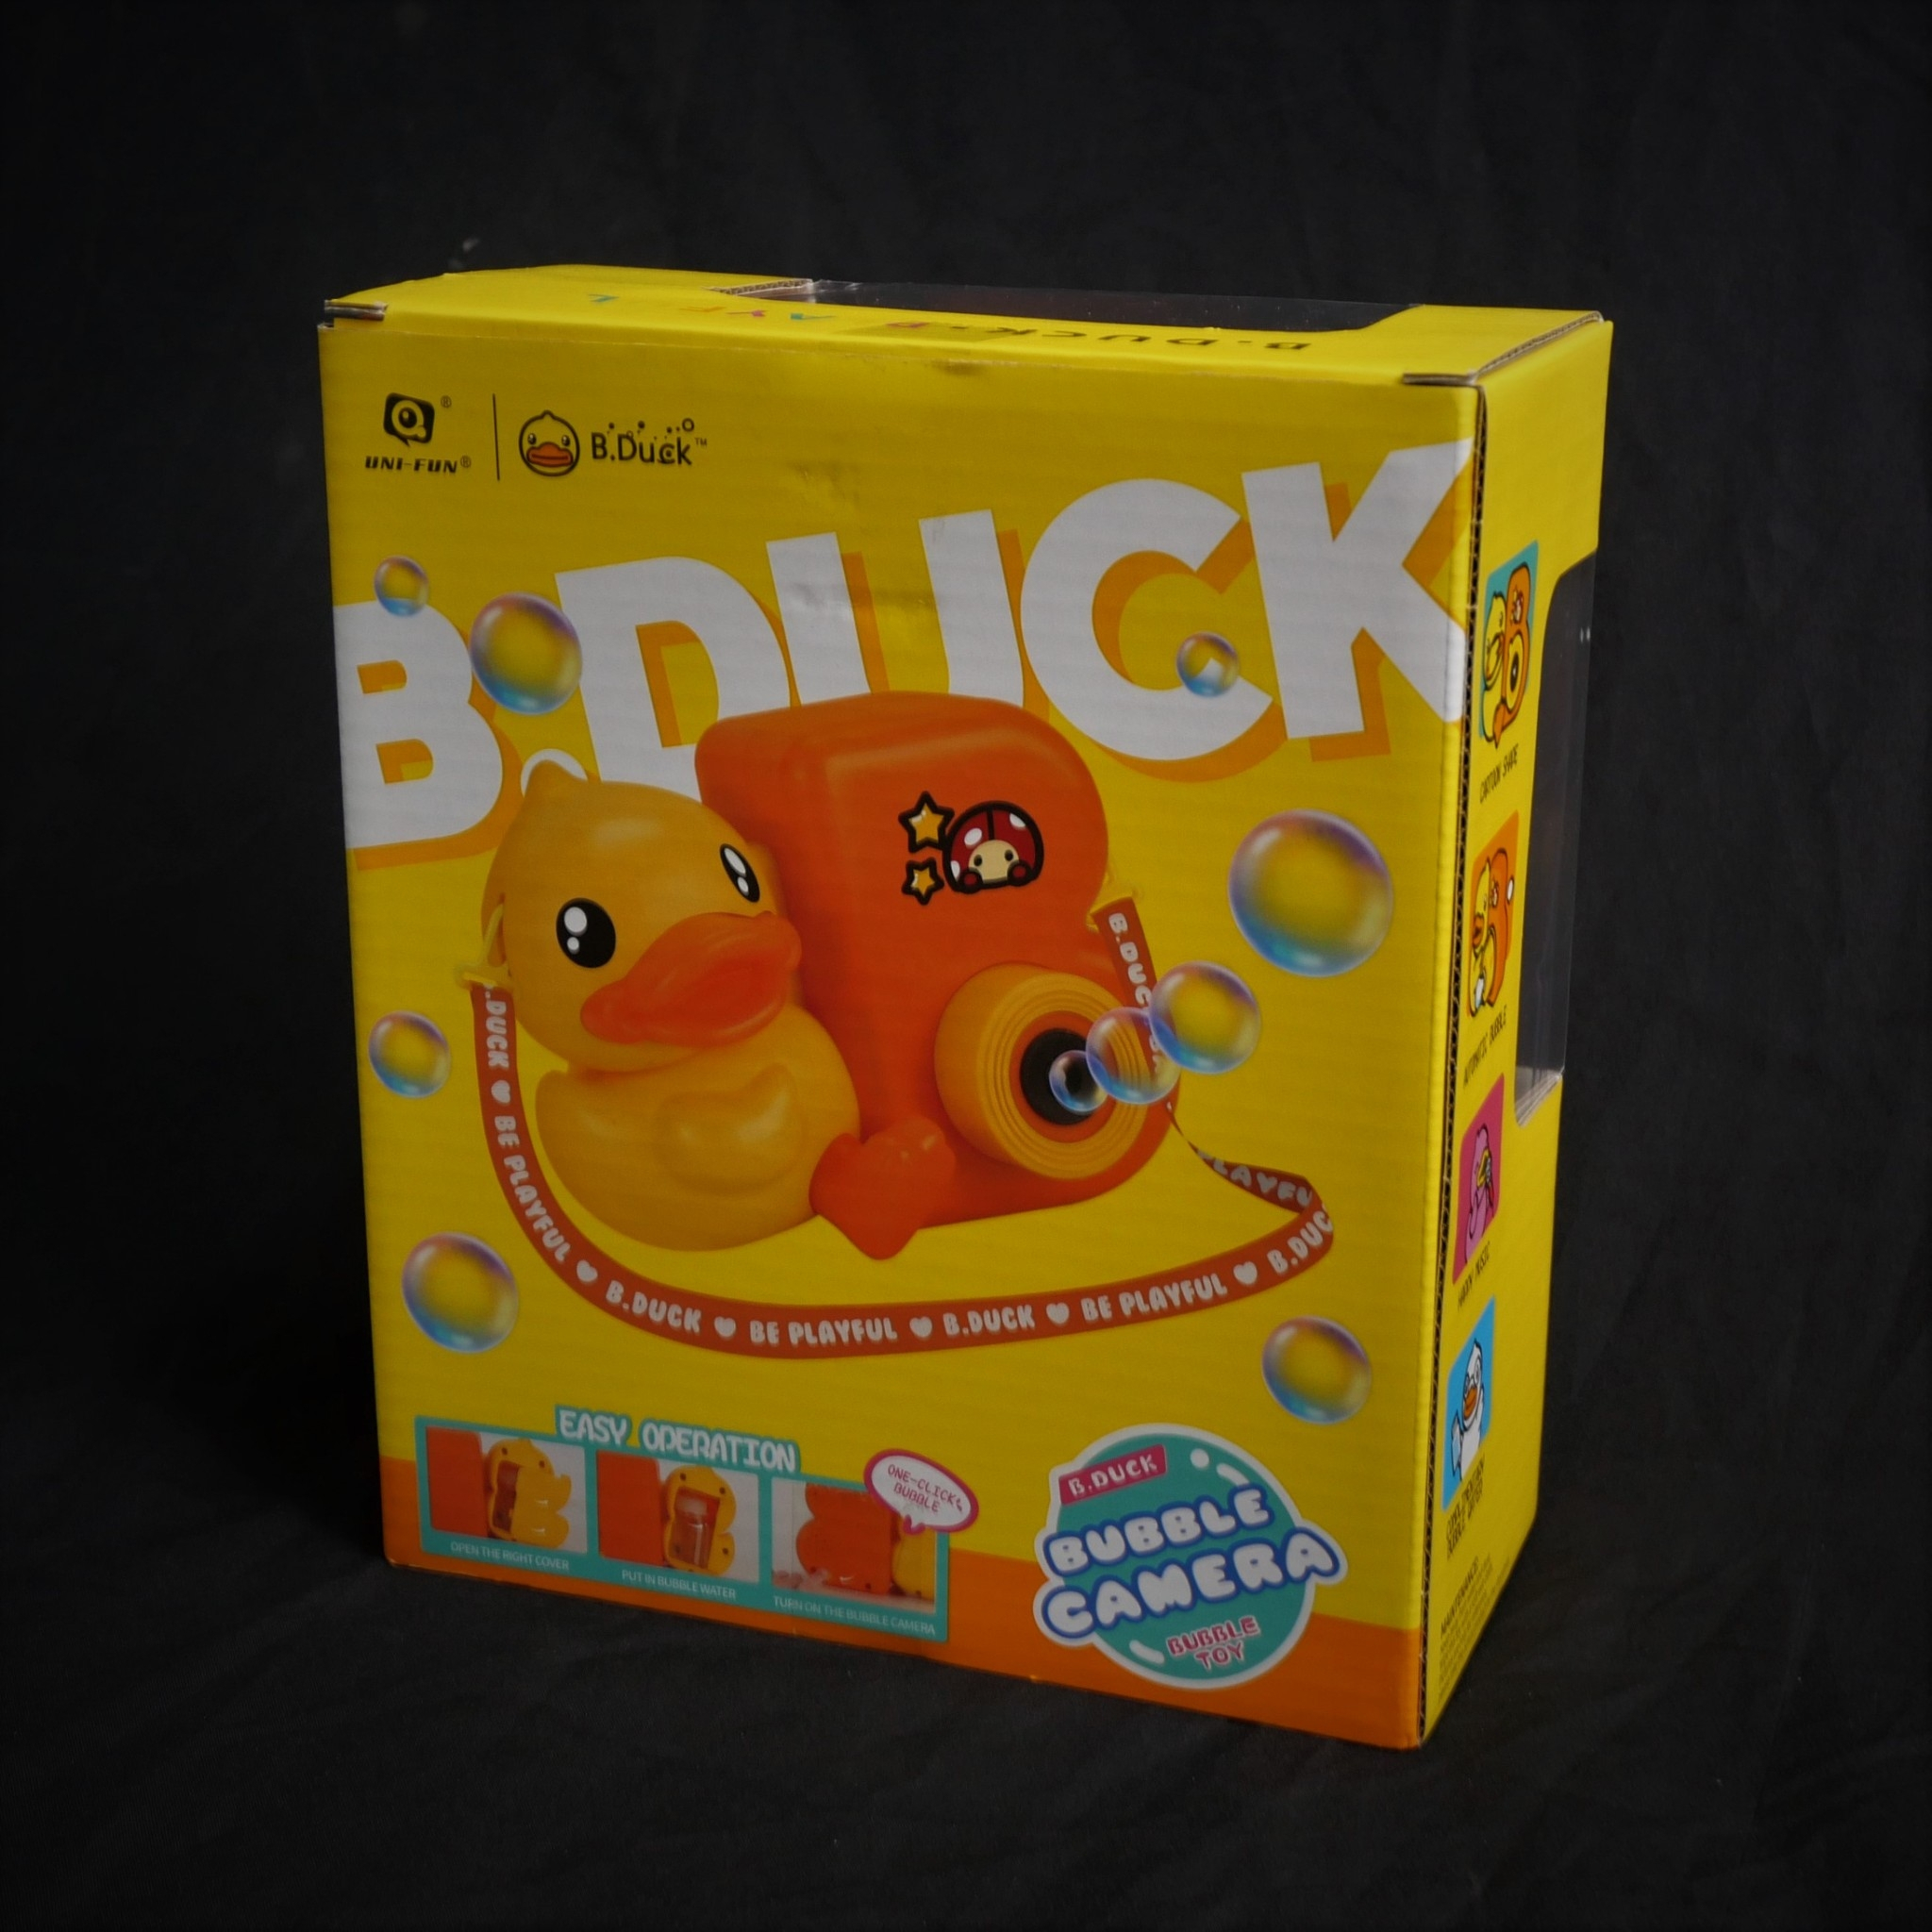 sale30-b-duck-ของเล่นกล้องเป็ดน้อยเป่าฟองสบู่-รูปทรงพิเศษ-bubble-camera-wl-bd415-ของเล่นสำหรับเด็ก-แบรนด์bduck